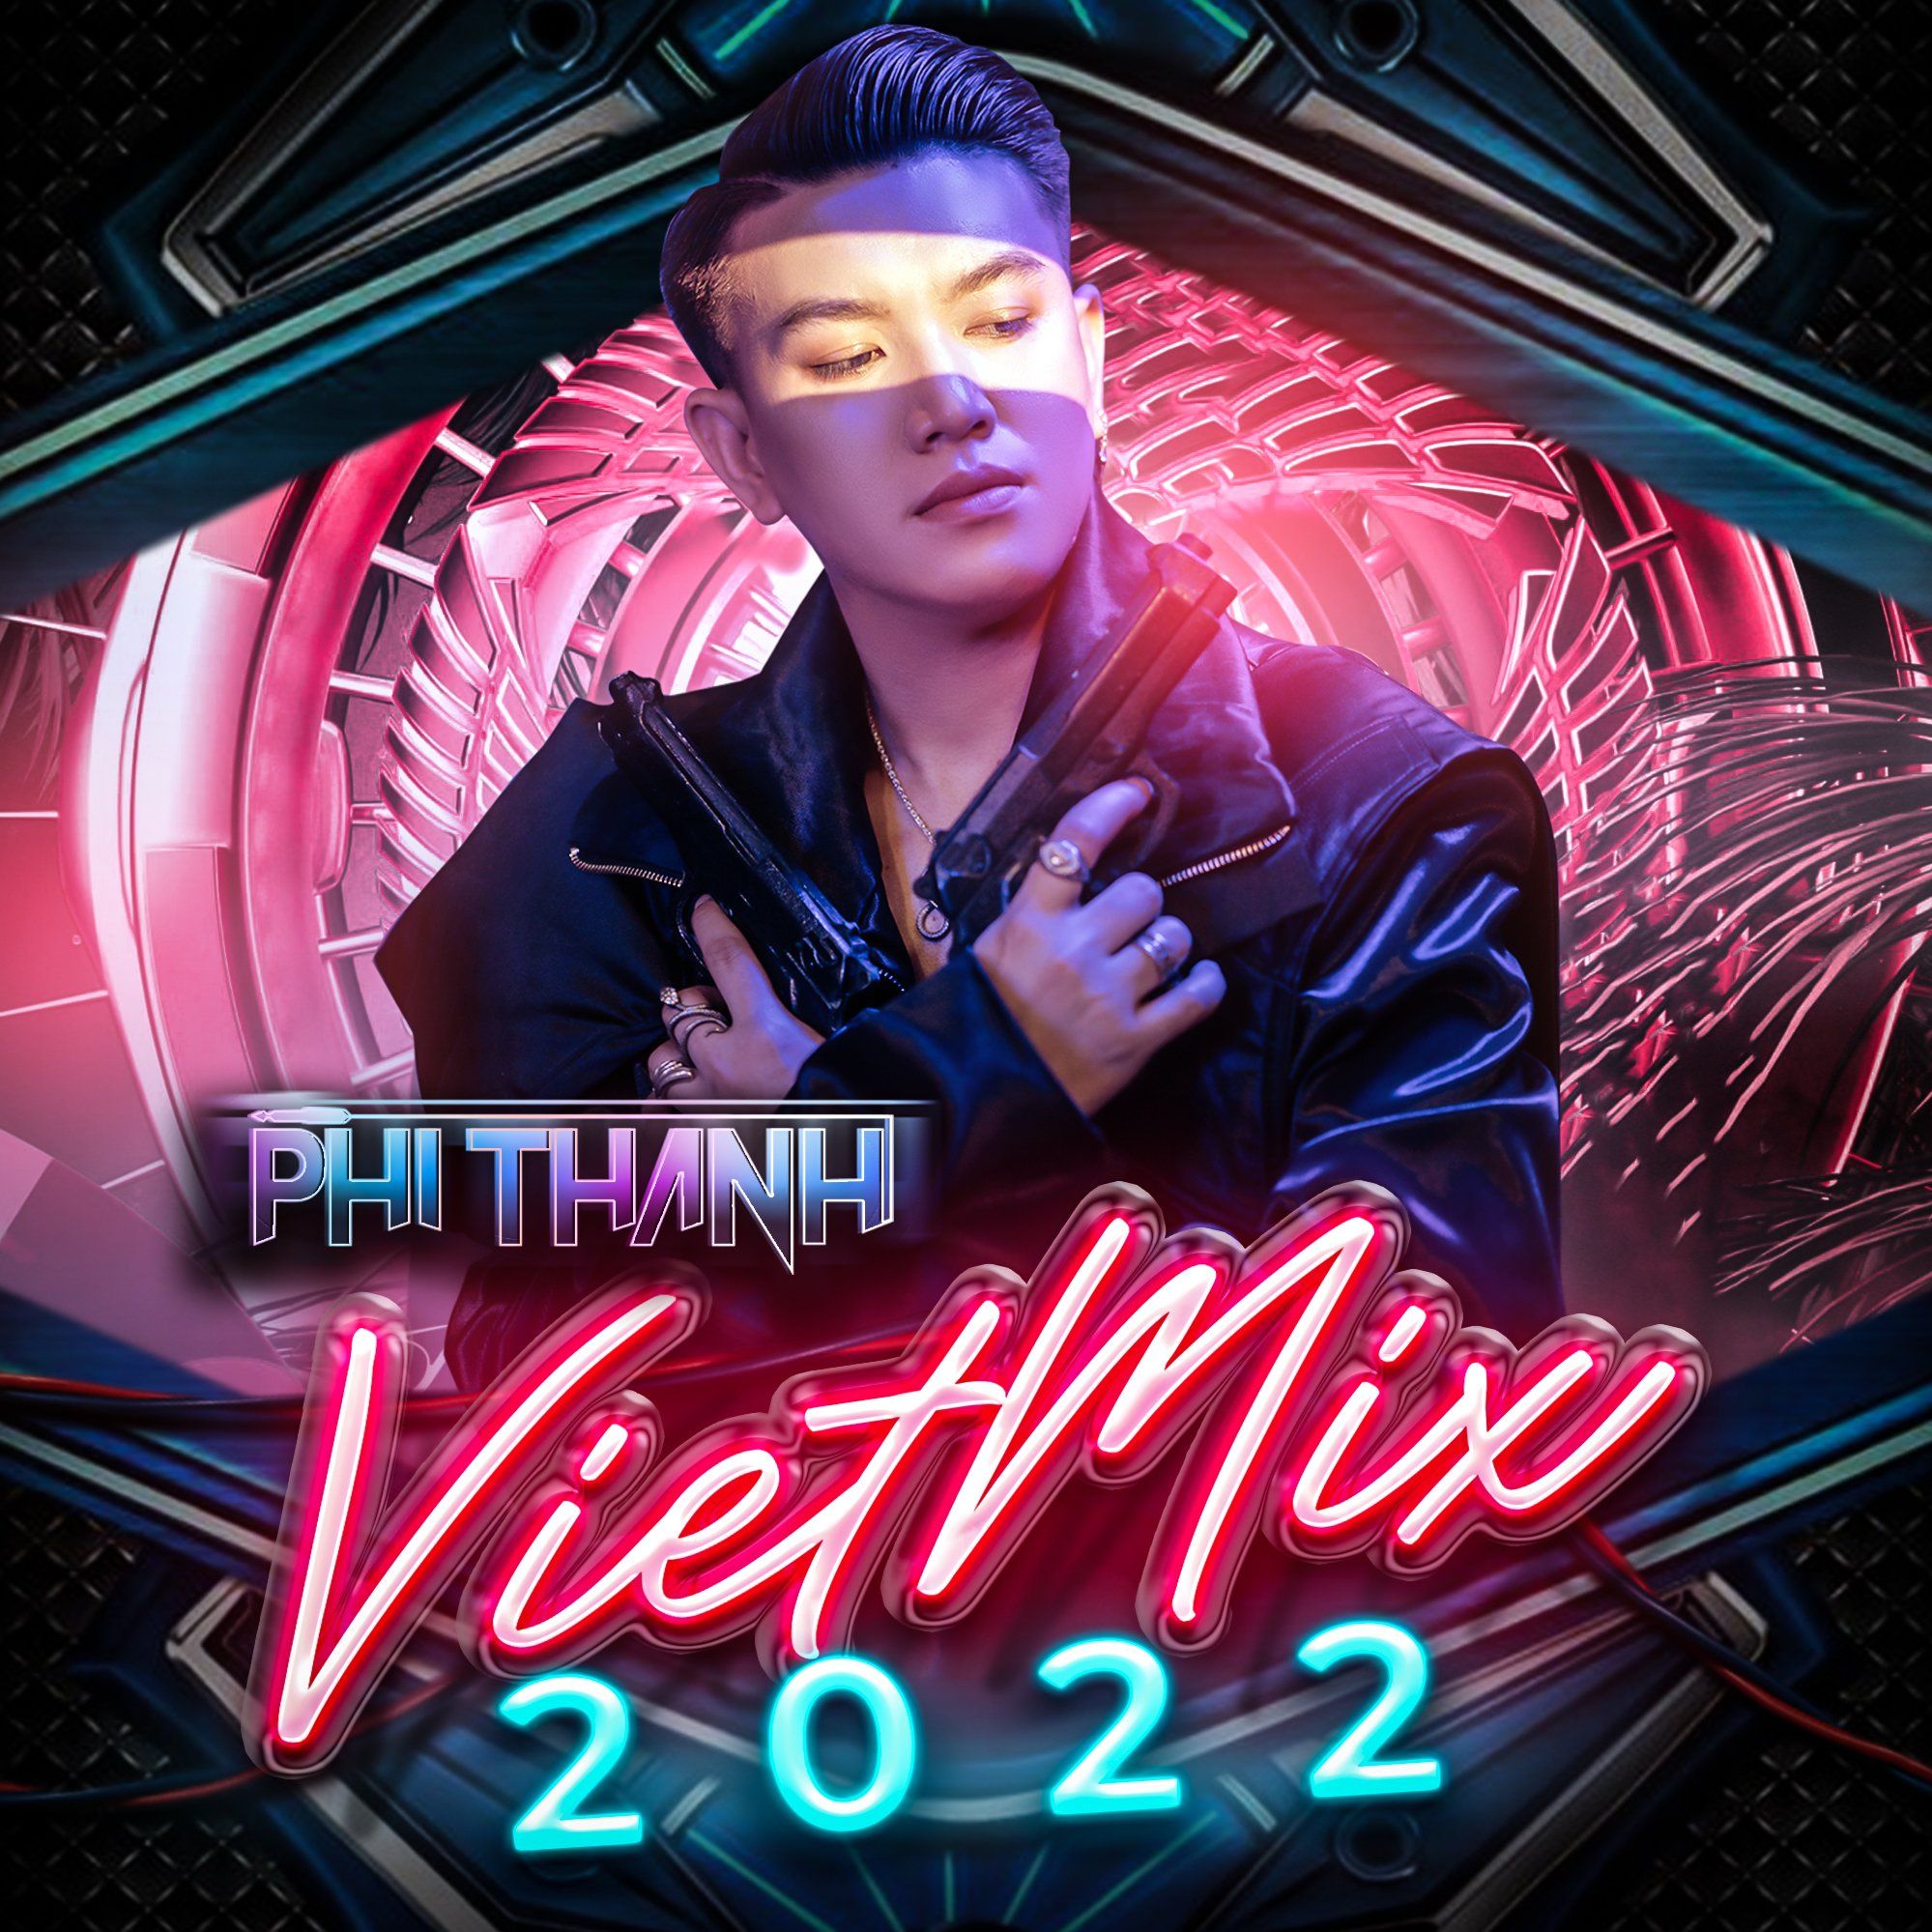 ဒေါင်းလုပ် Viet Mix 2022 By Phi Thành